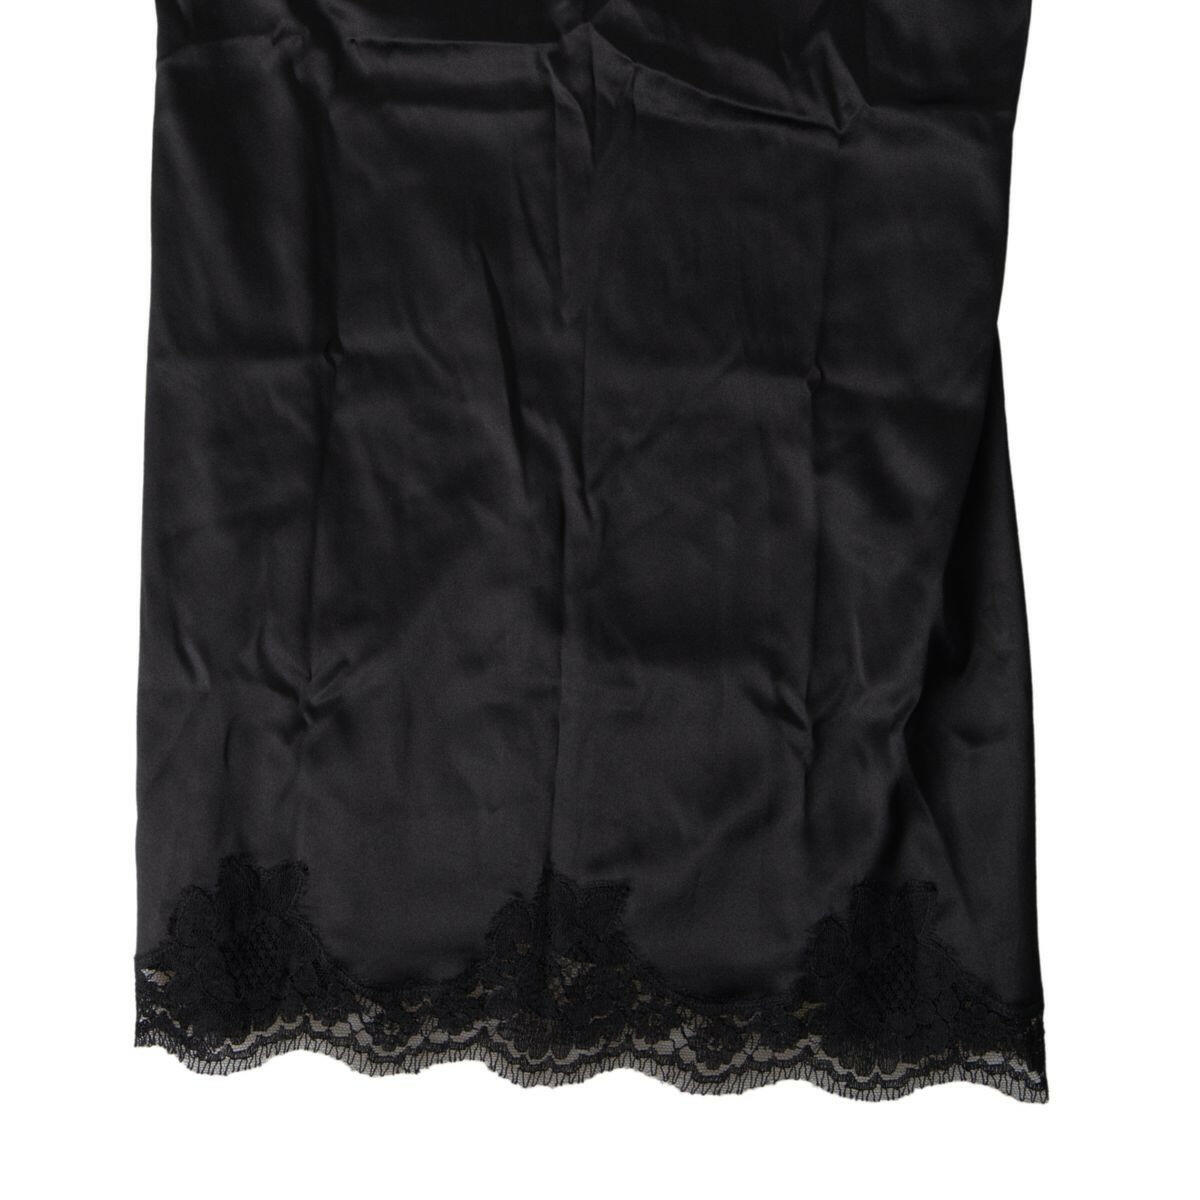 Dolce & Gabbana Black Lace Silk Sleepwear Camisole Top Underwear - GENUINE AUTHENTIC BRAND LLC  